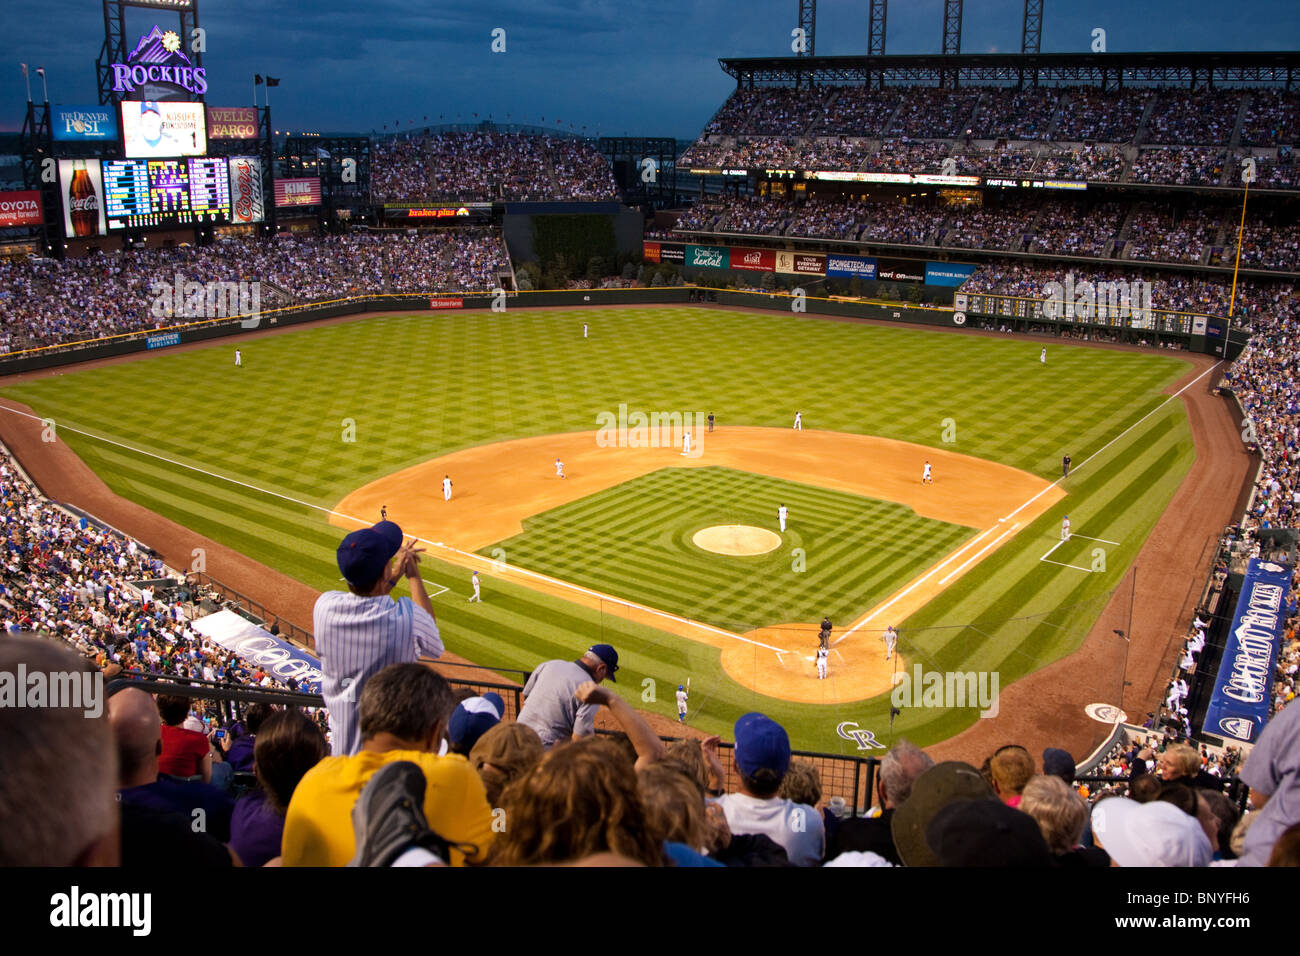 Coors Field, hogar del equipo de béisbol de los Rockies de Colorado, en Denver, Colorado, EE.UU. Foto de stock